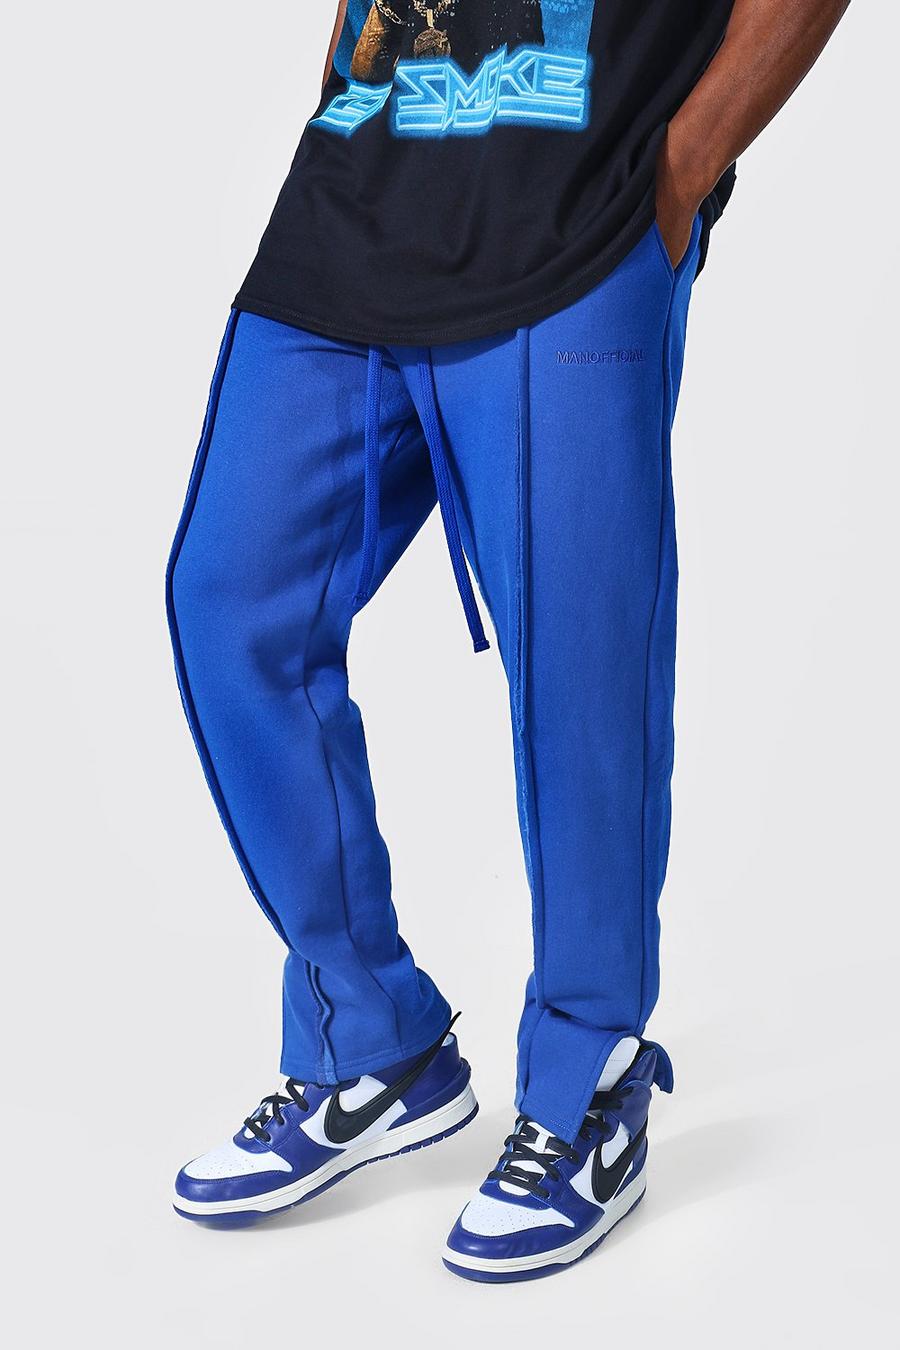 Pantalones de chándal MAN Official holgados con abertura en el bajo, Cobalt azul image number 1